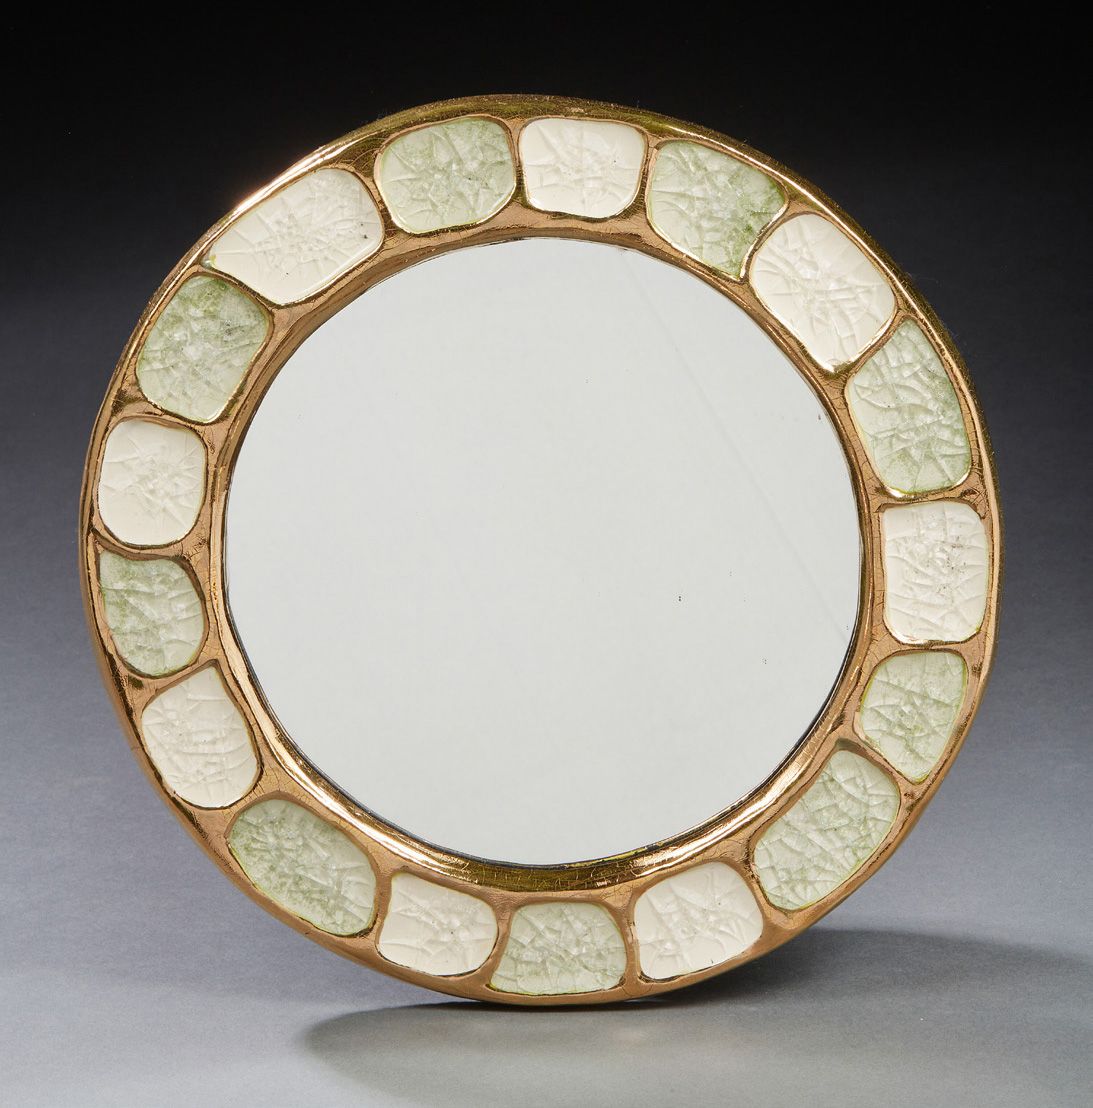 MITHÉ ESPELT (1923-2020) Spiegel Keramikkristalle
Durchmesser: 30 cm